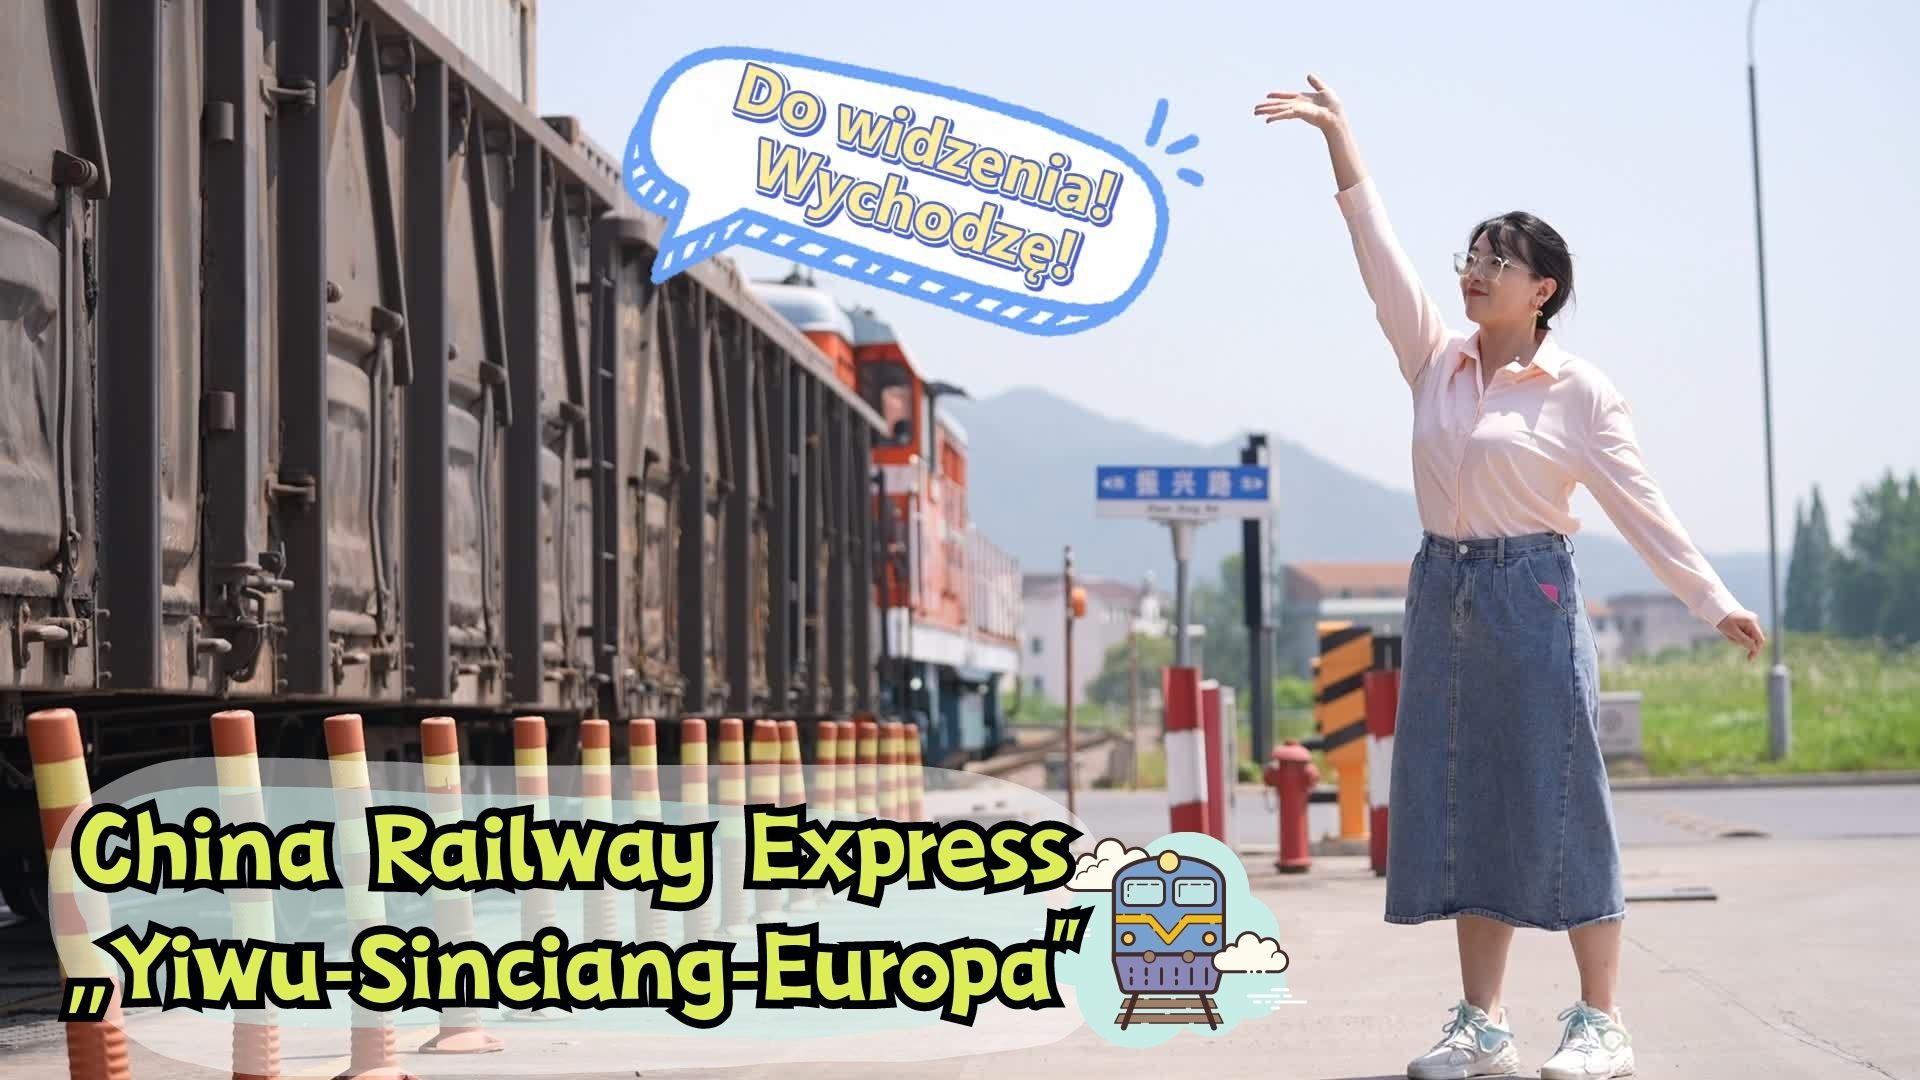 China Railway Express „Yiwu-Sinciang-Europa”